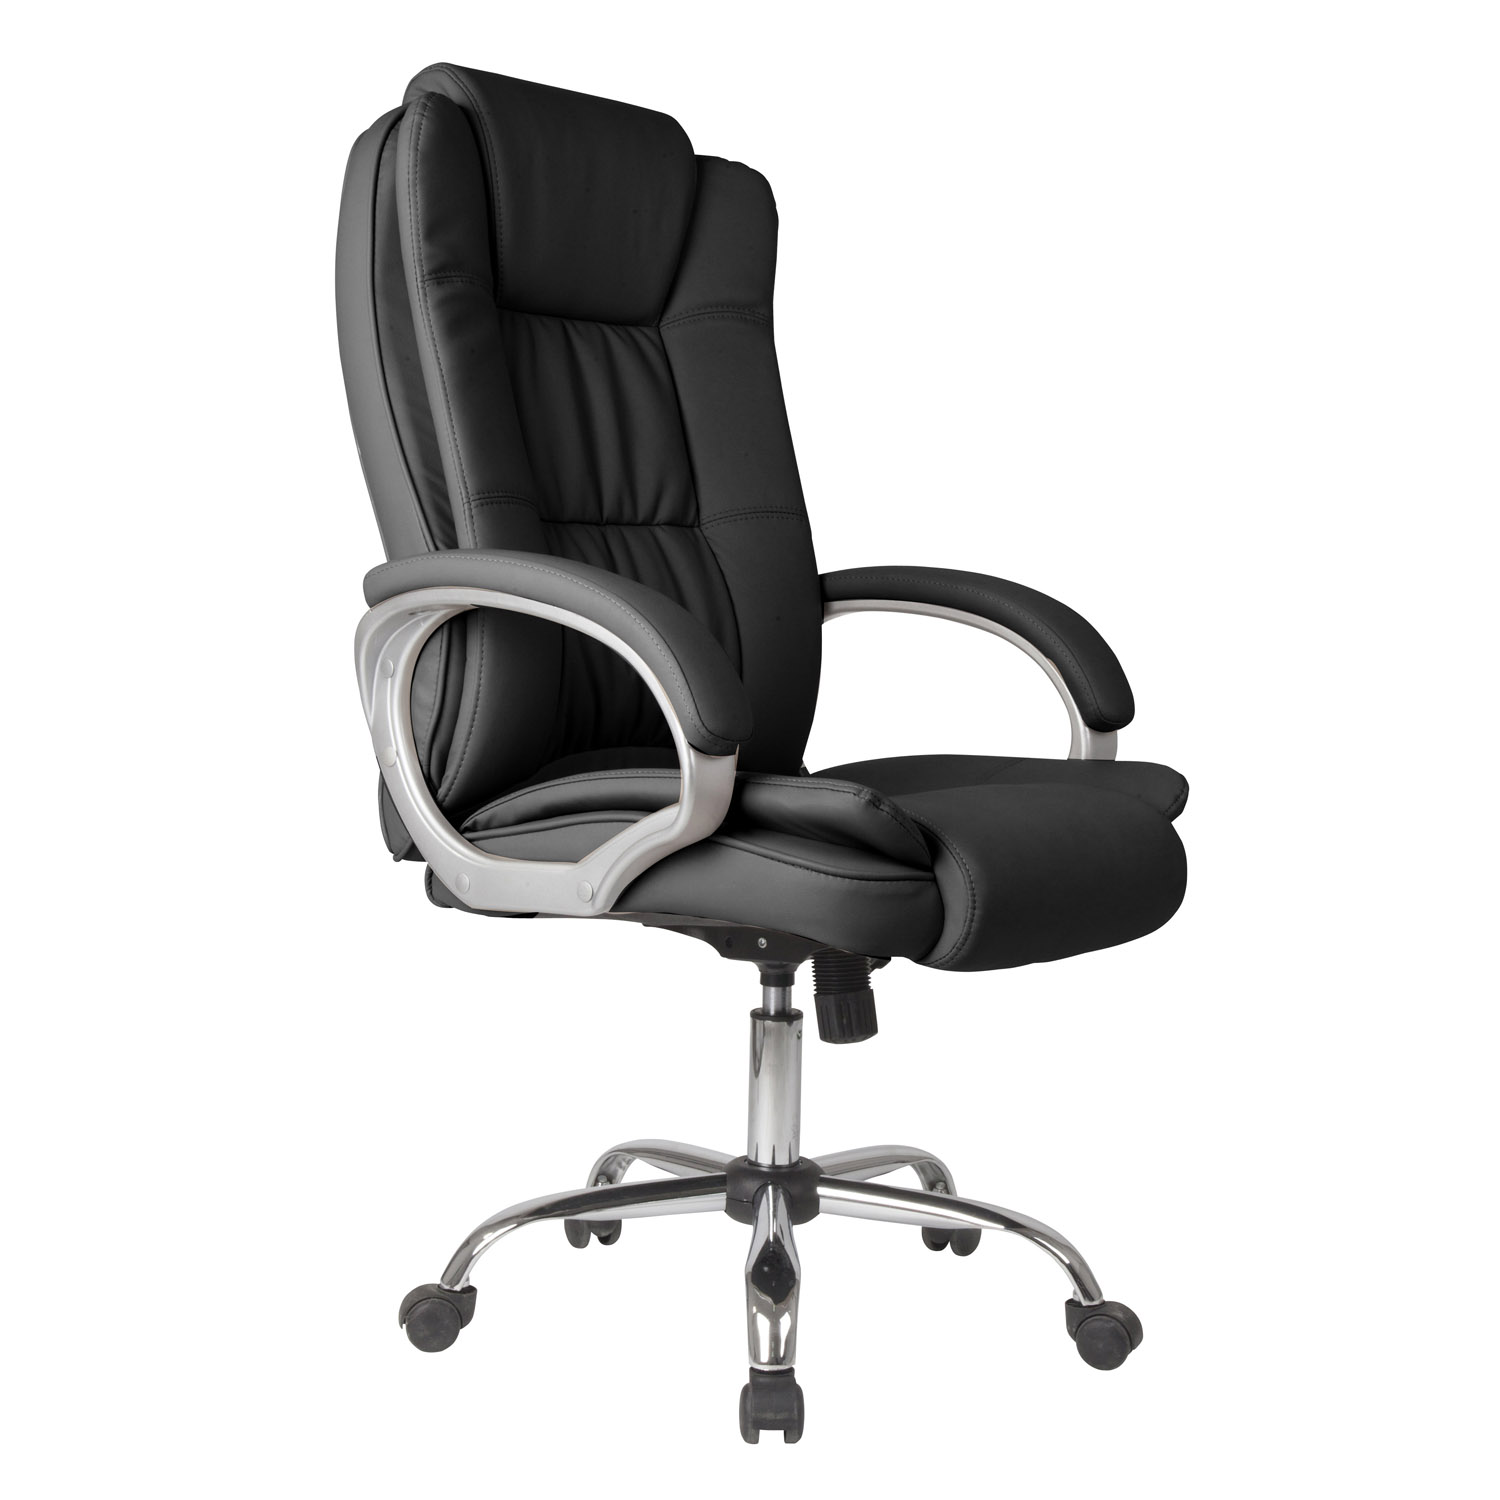 Chaise de bureau elevable et Fauteuil inclinable en simili cuir noir